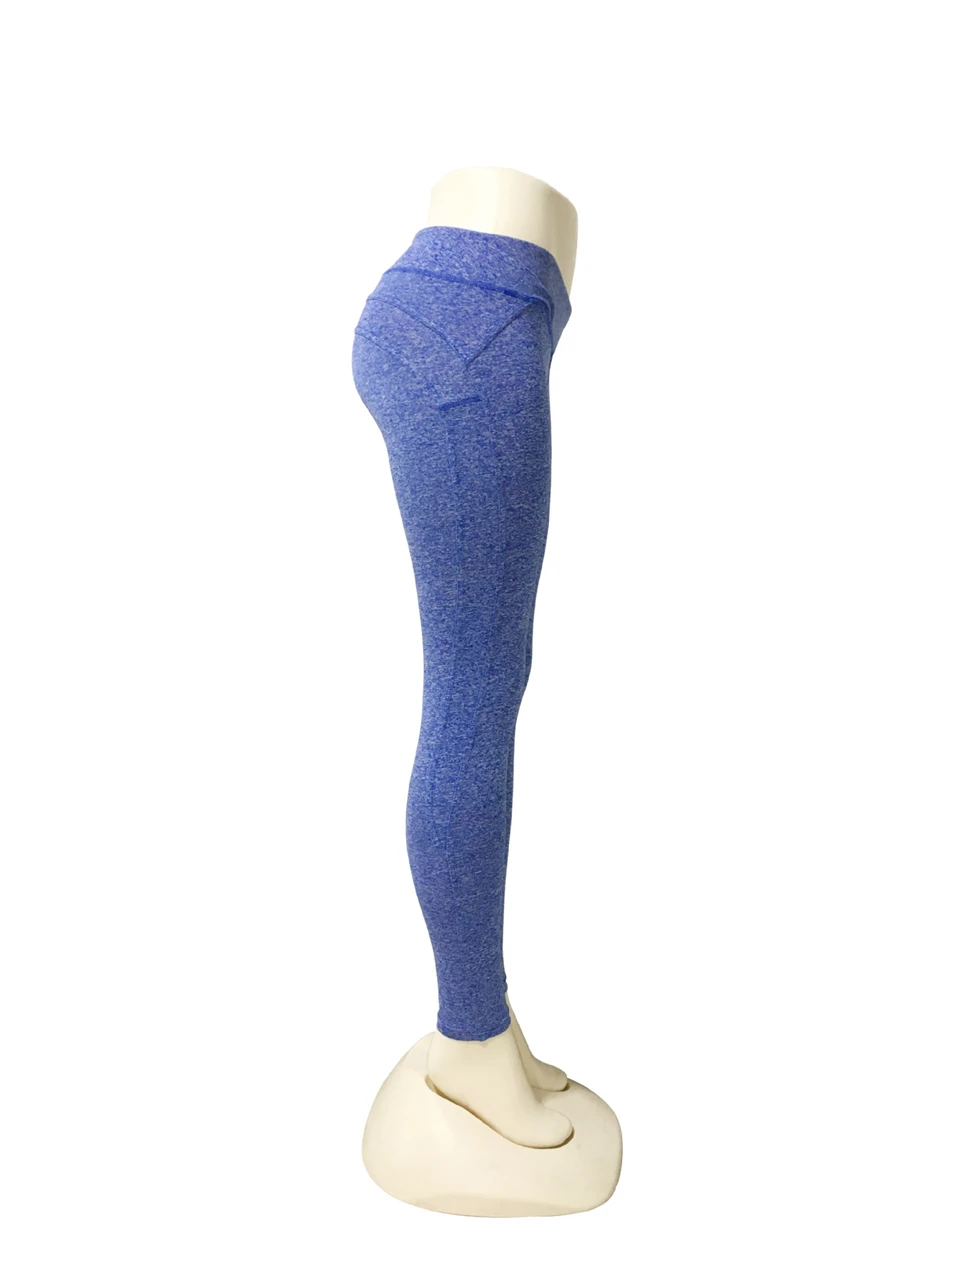 Спортивные легинсы для бега Штаны Для Женщин Йога женские брюки, леггинсы с завышенной талией брюки для Для женщин тренировочная одежда для Для женщин